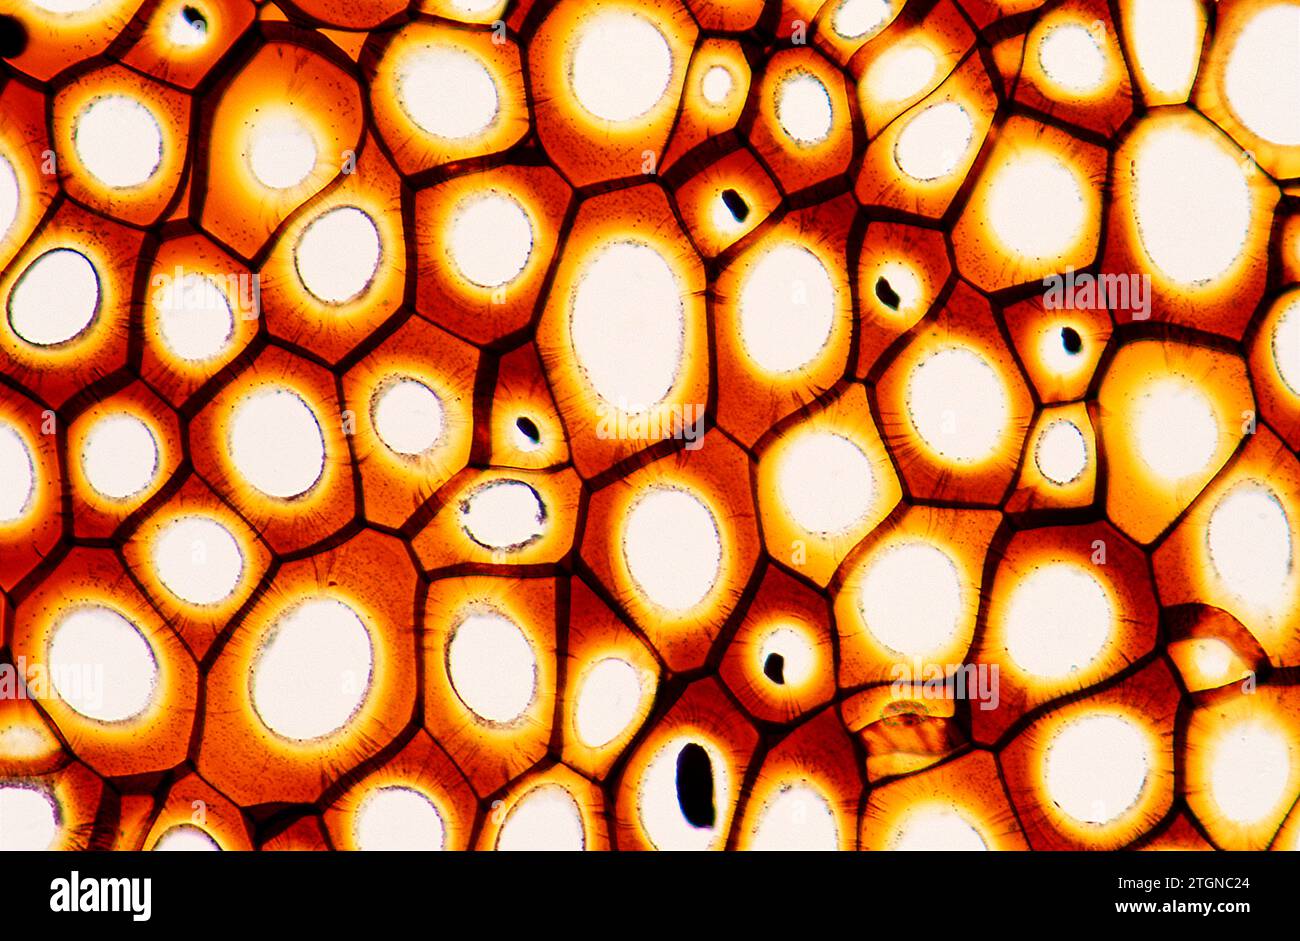 Plasmodesmata sind mikroskopische Tubuli, die Zellen miteinander verbinden. Photomikrograph. Stockfoto